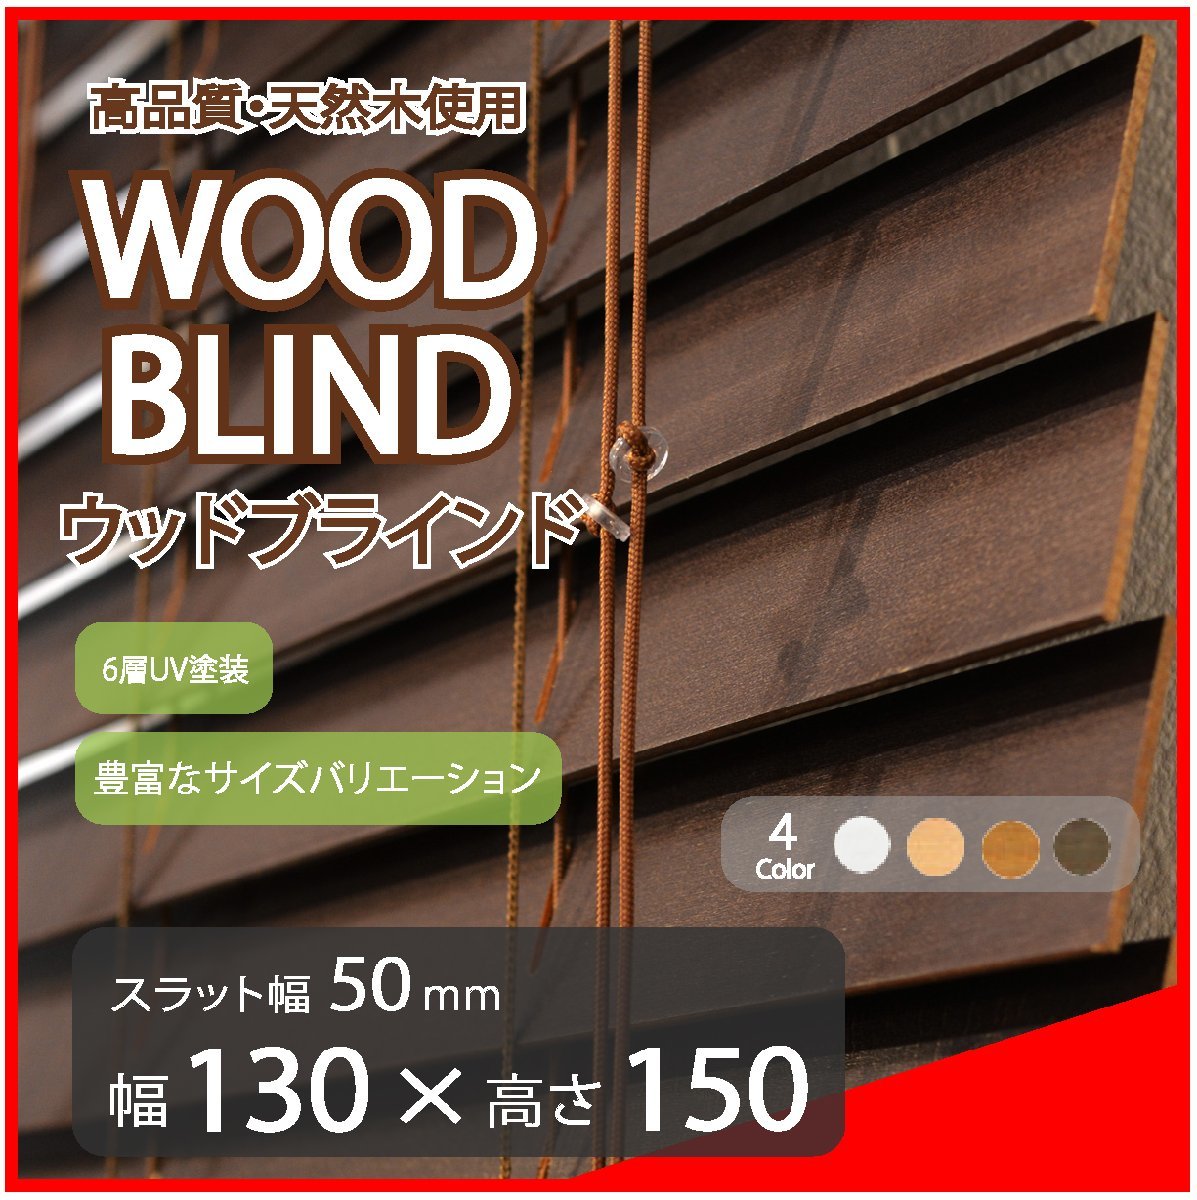 高品質 ウッドブラインド 木製 ブラインド 既成サイズ スラット(羽根)幅50mm 幅130cm×高さ150cm ダーク